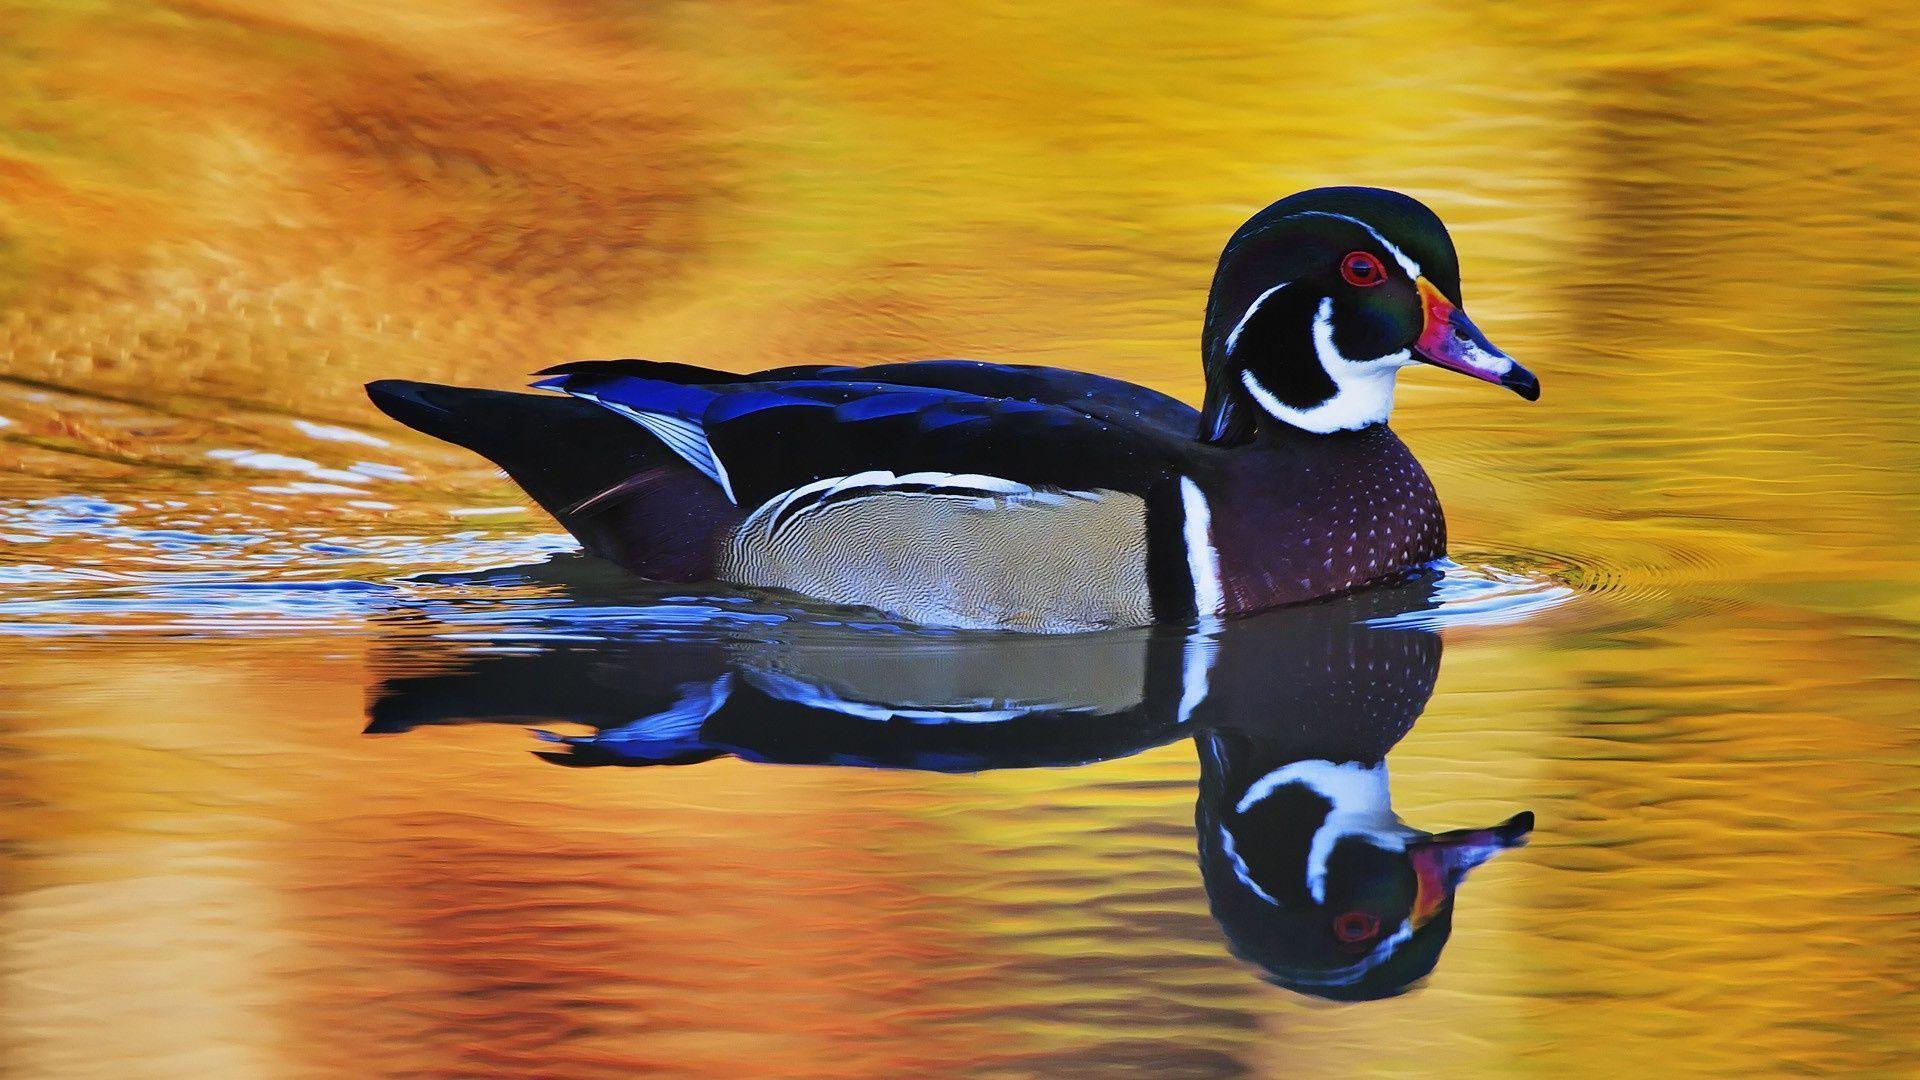 Hình nền wood duck đến từ những hình ảnh tuyệt đẹp của chim mồng Ất được chụp từ những góc độ độc đáo. Với nhiều phong cách khác nhau, từ tông màu sáng cho đến tông màu đậm, bạn sẽ tìm thấy hình nền hoàn hảo cho máy tính của mình.